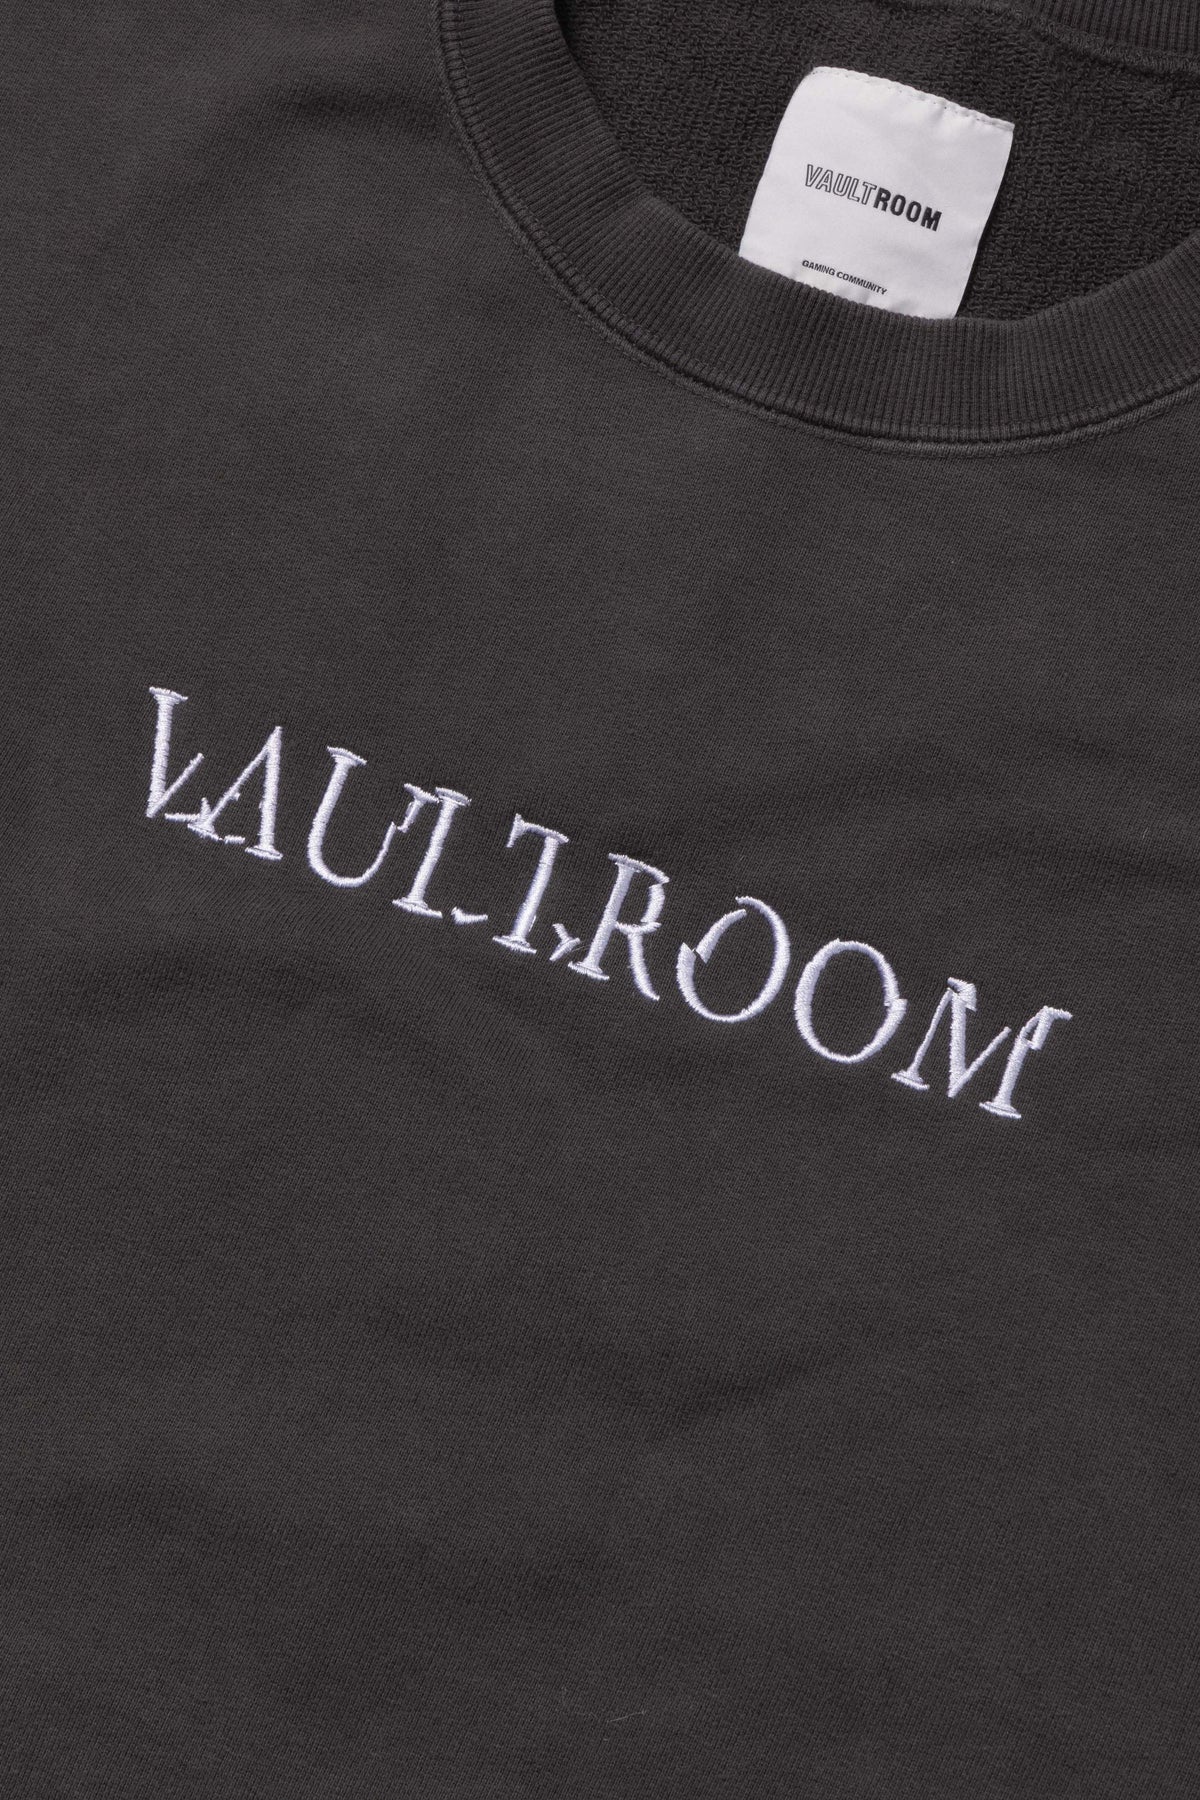 VAULTROOM CUTOFF VEST / CHARCOAL